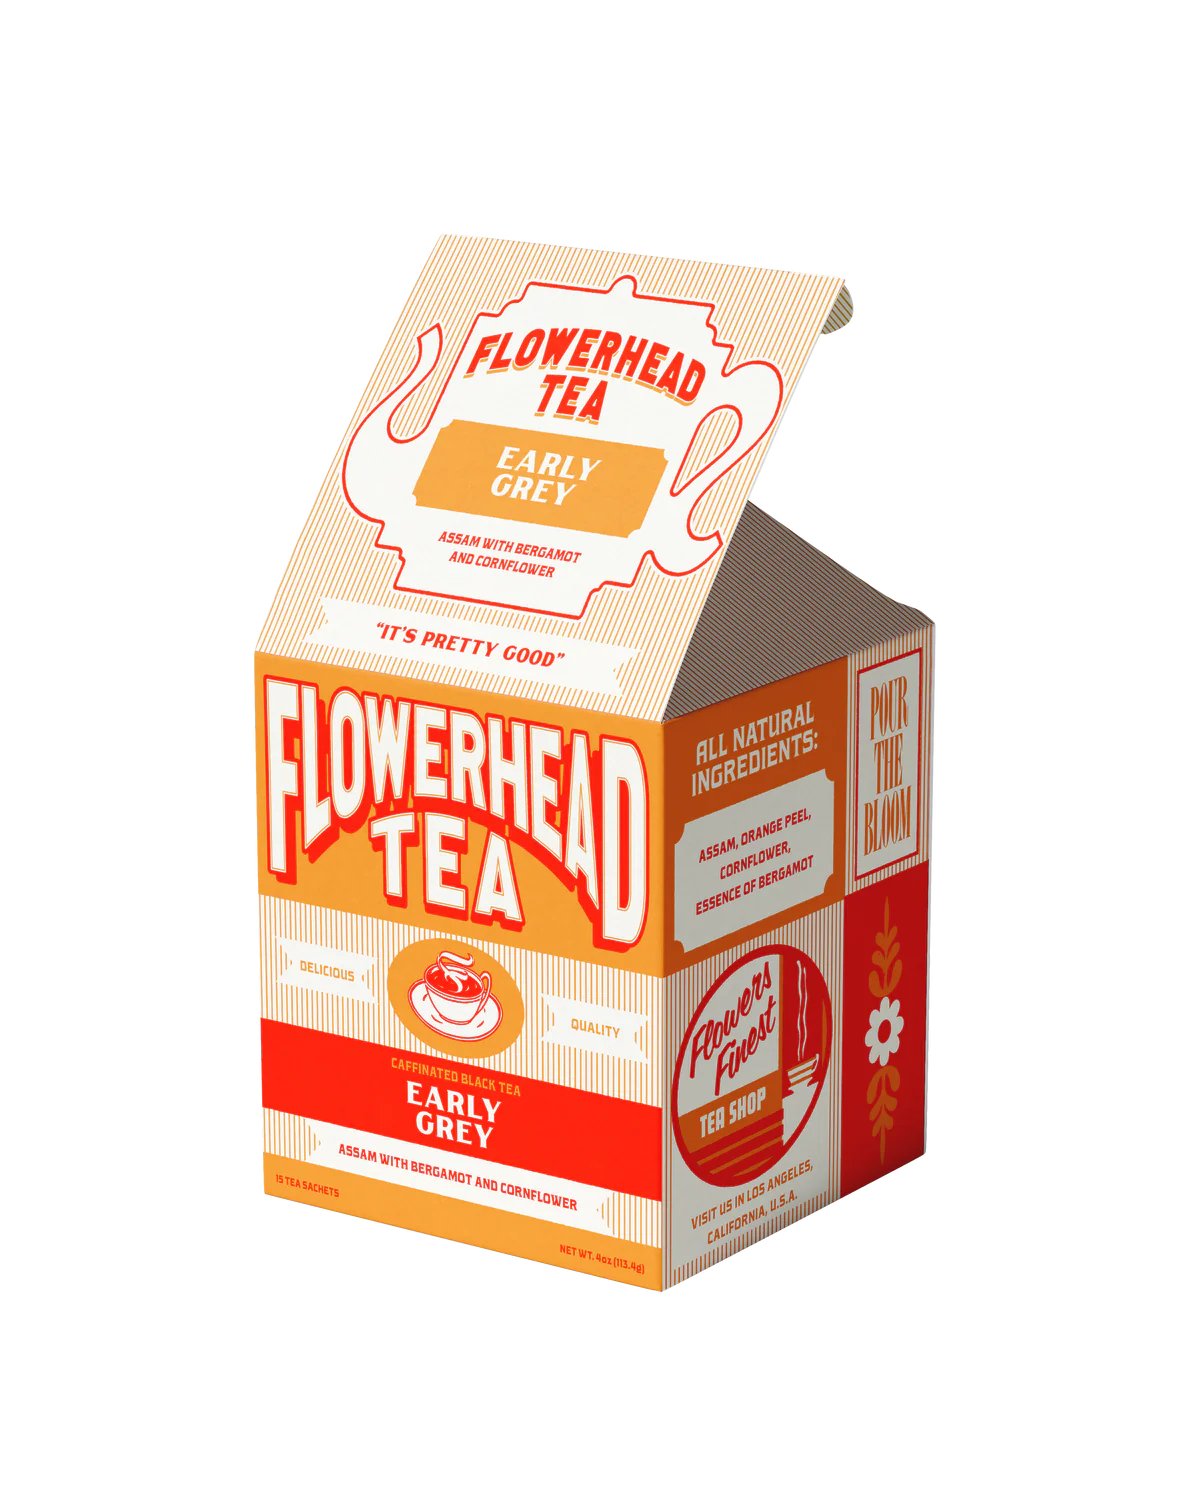 Boxed Tea Bags by Flowerhead Tea  flowerhead tea Early Grey  